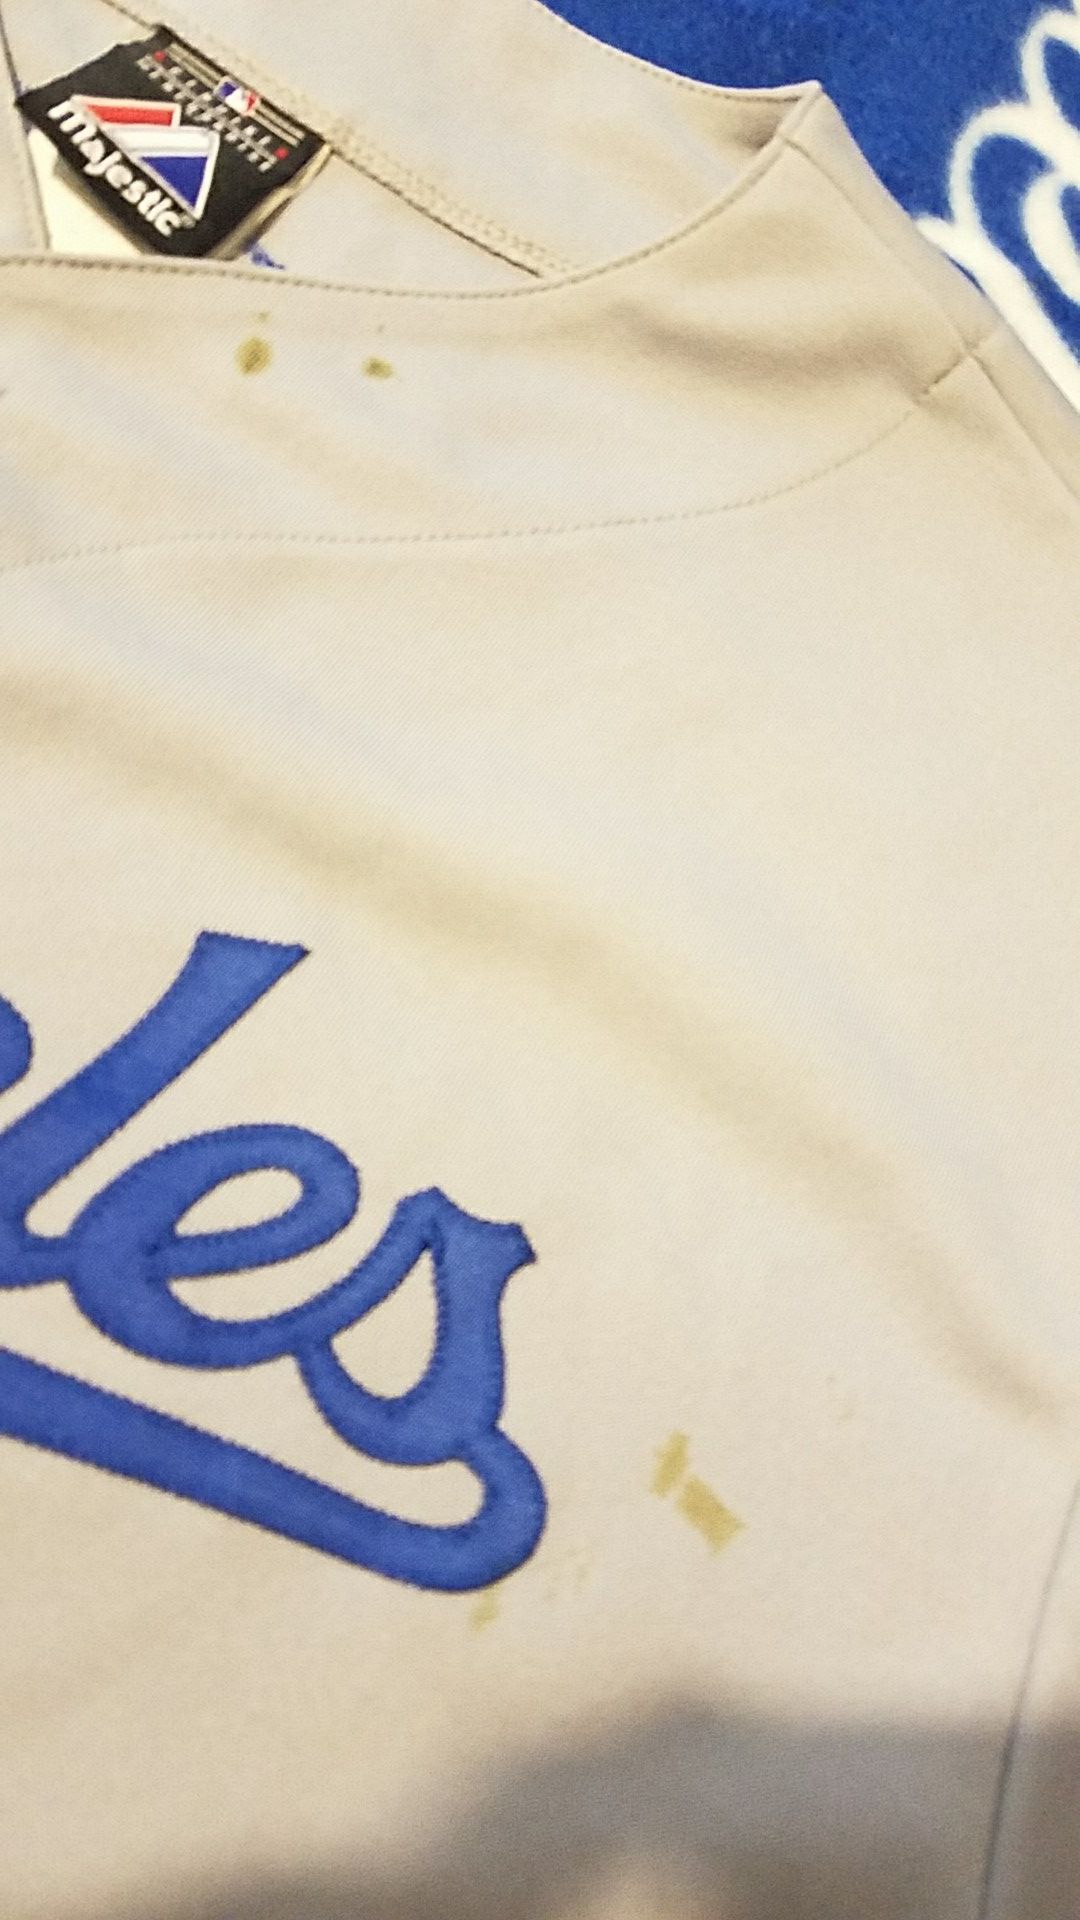 Dodgers Jerseys Size 2XL for Sale in Las Vegas, NV - OfferUp